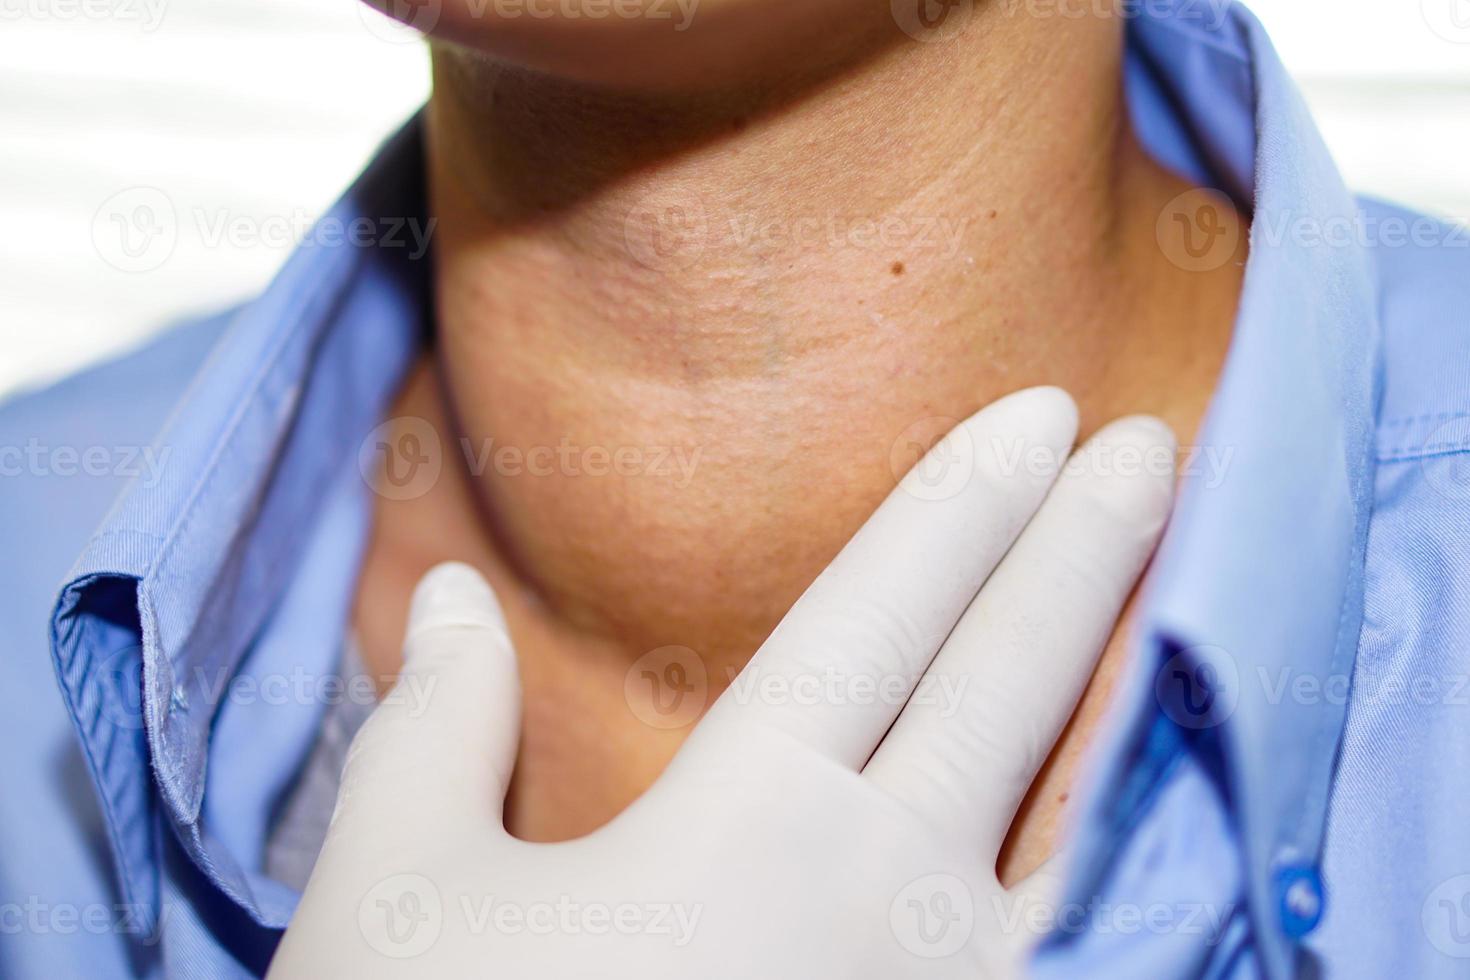 il paziente asiatico ha un ingrossamento anomalo della tiroide alla gola foto